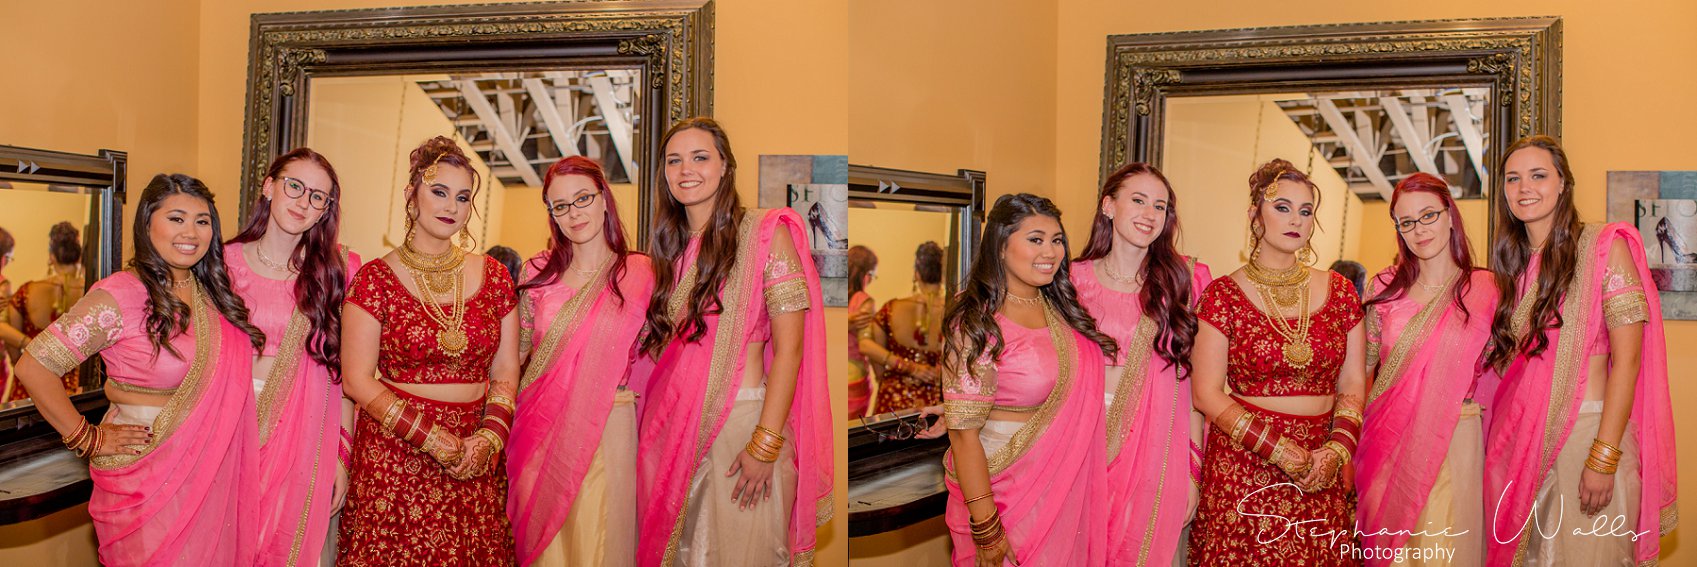 Kaushik 103 Snohomish Fusion Indian Wedding With Megan and Mo